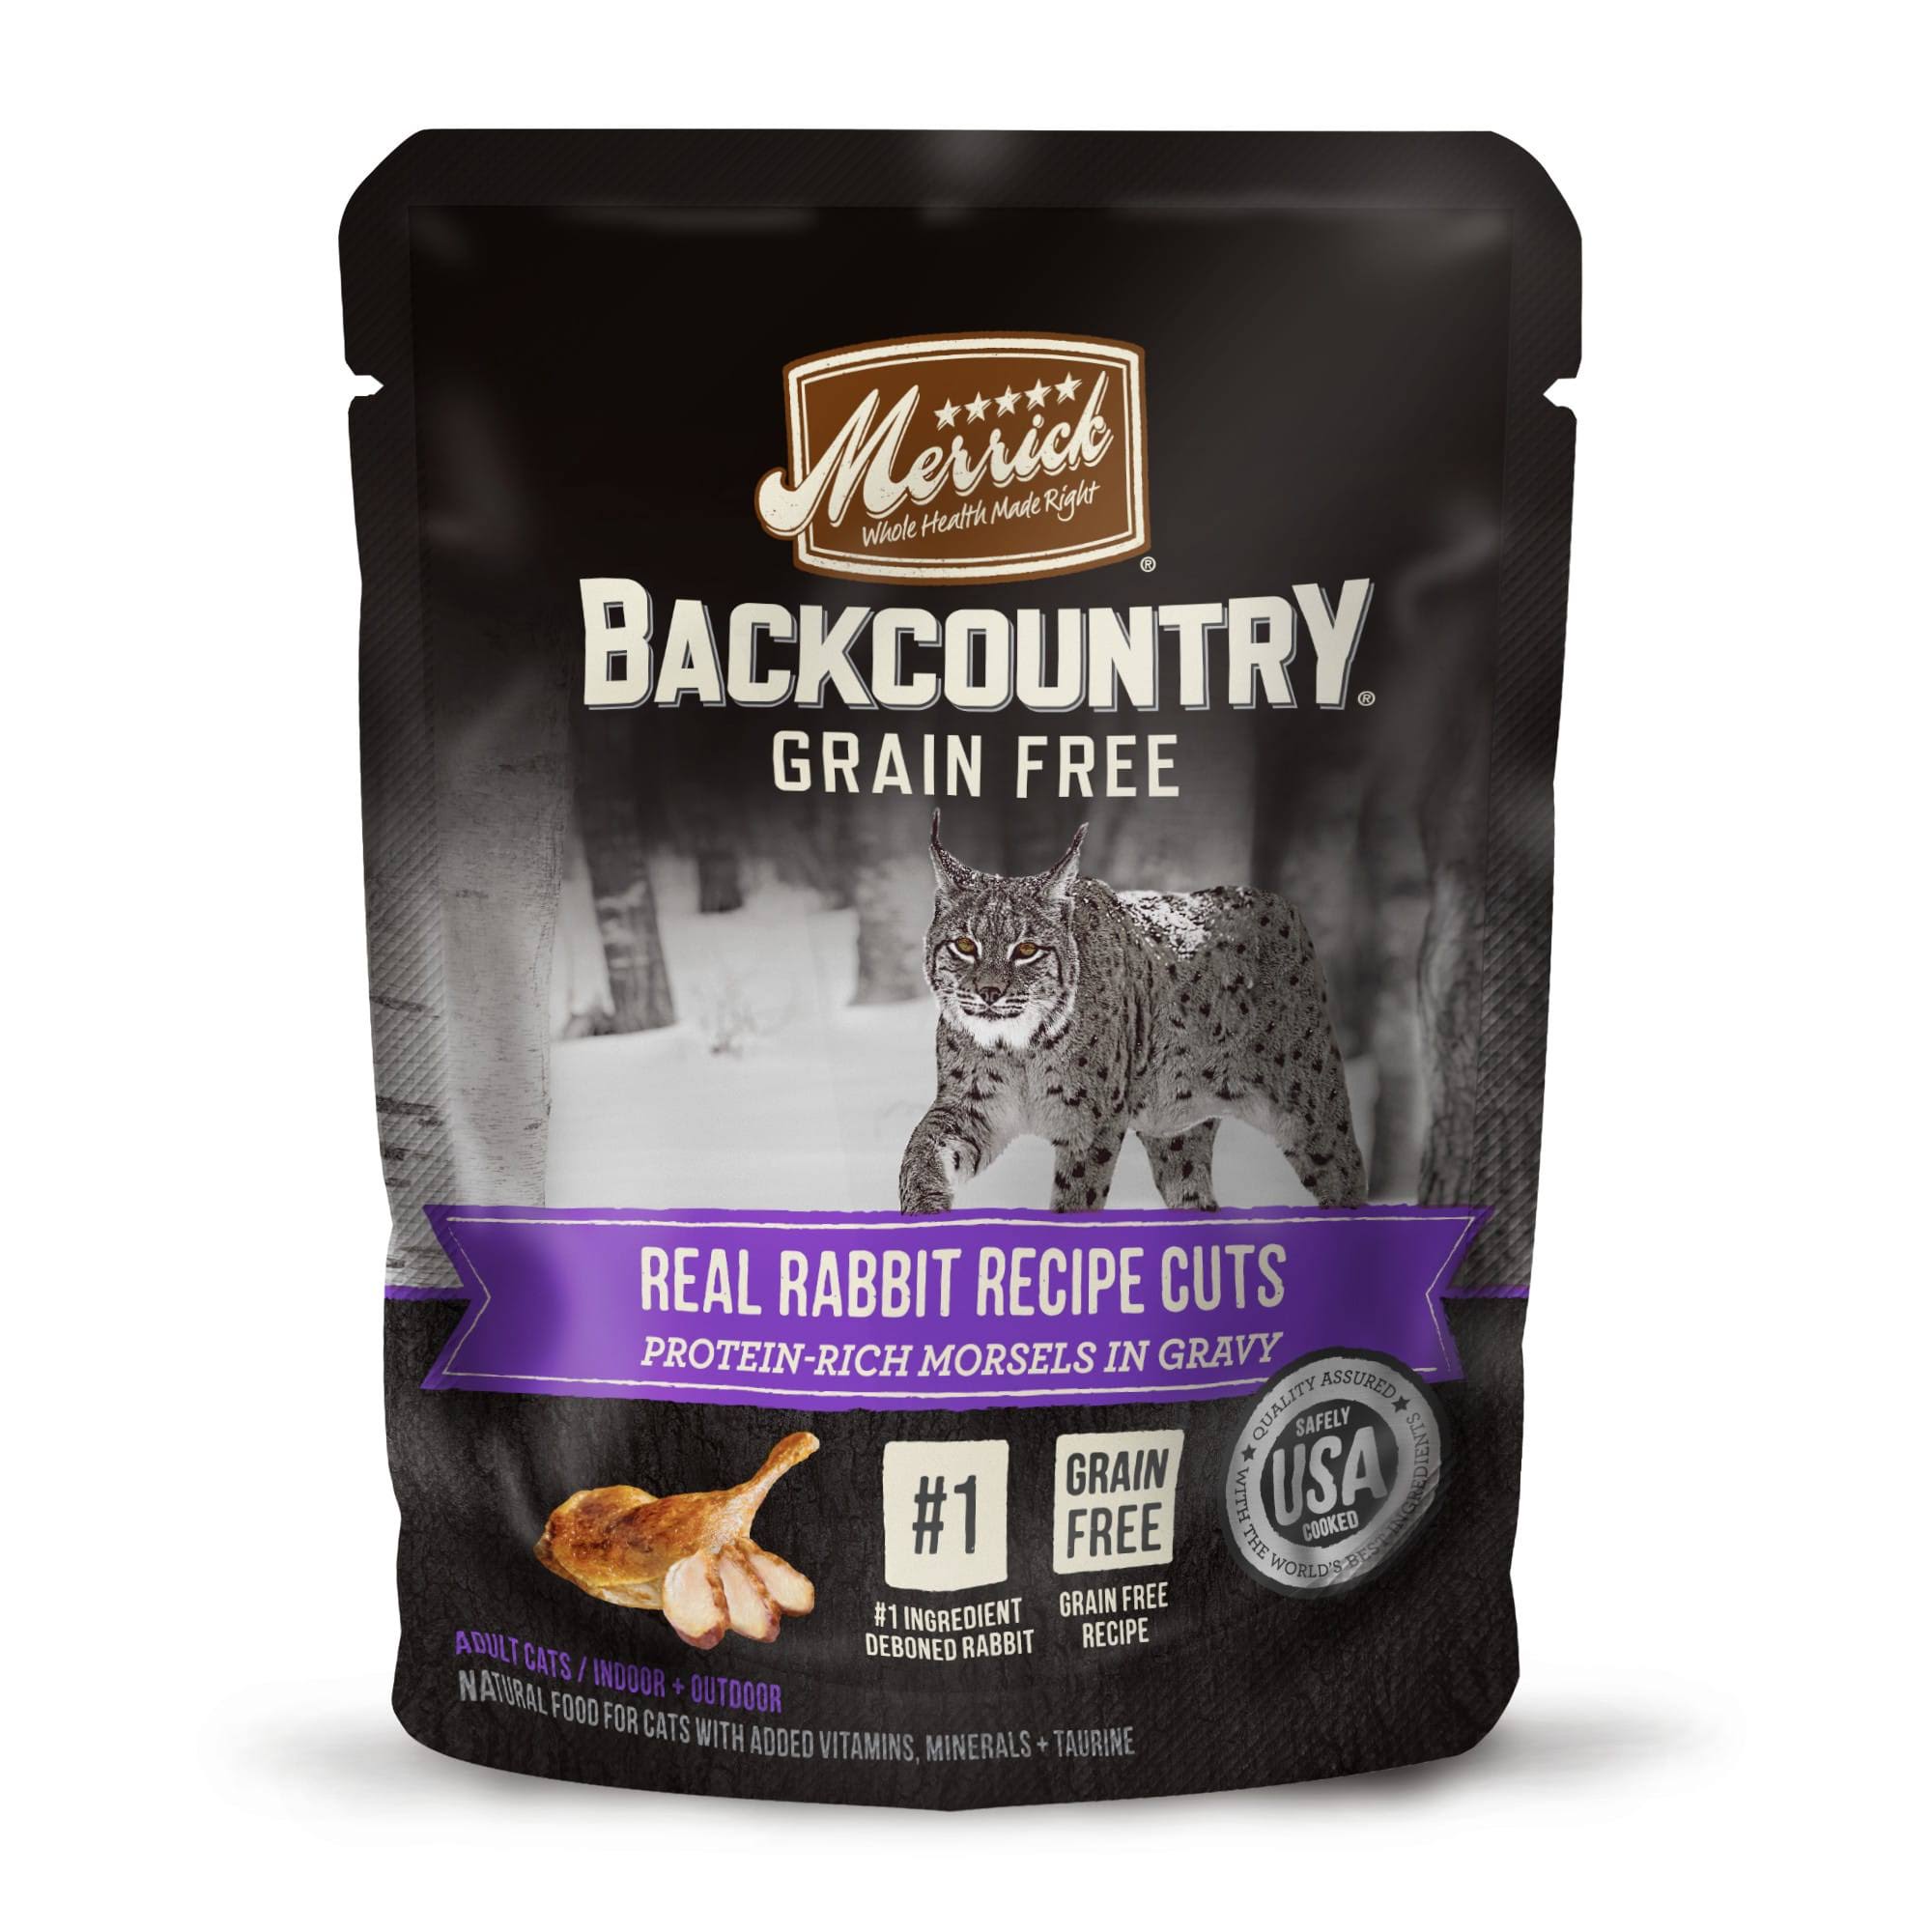 Merrick Backcountry Cat Food - Real Rabbit Cuts Recipe